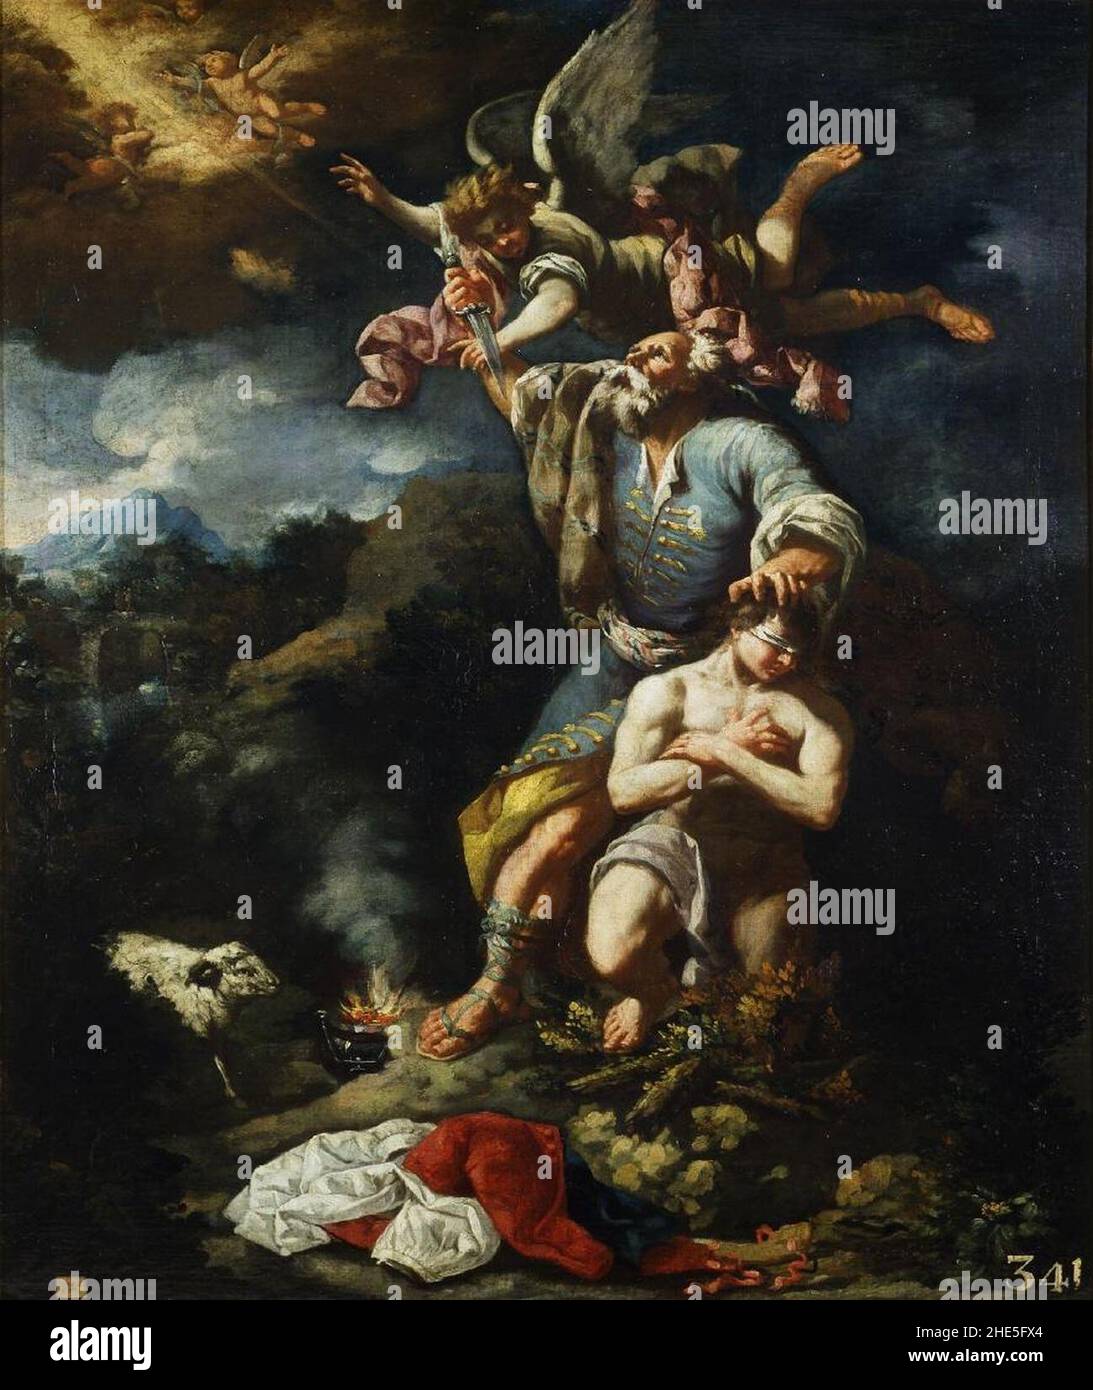 Sacrificio de Isaac, de Antonio González Velázquez (Real Academia de Bellas Artes de San Fernando). Stock Photo